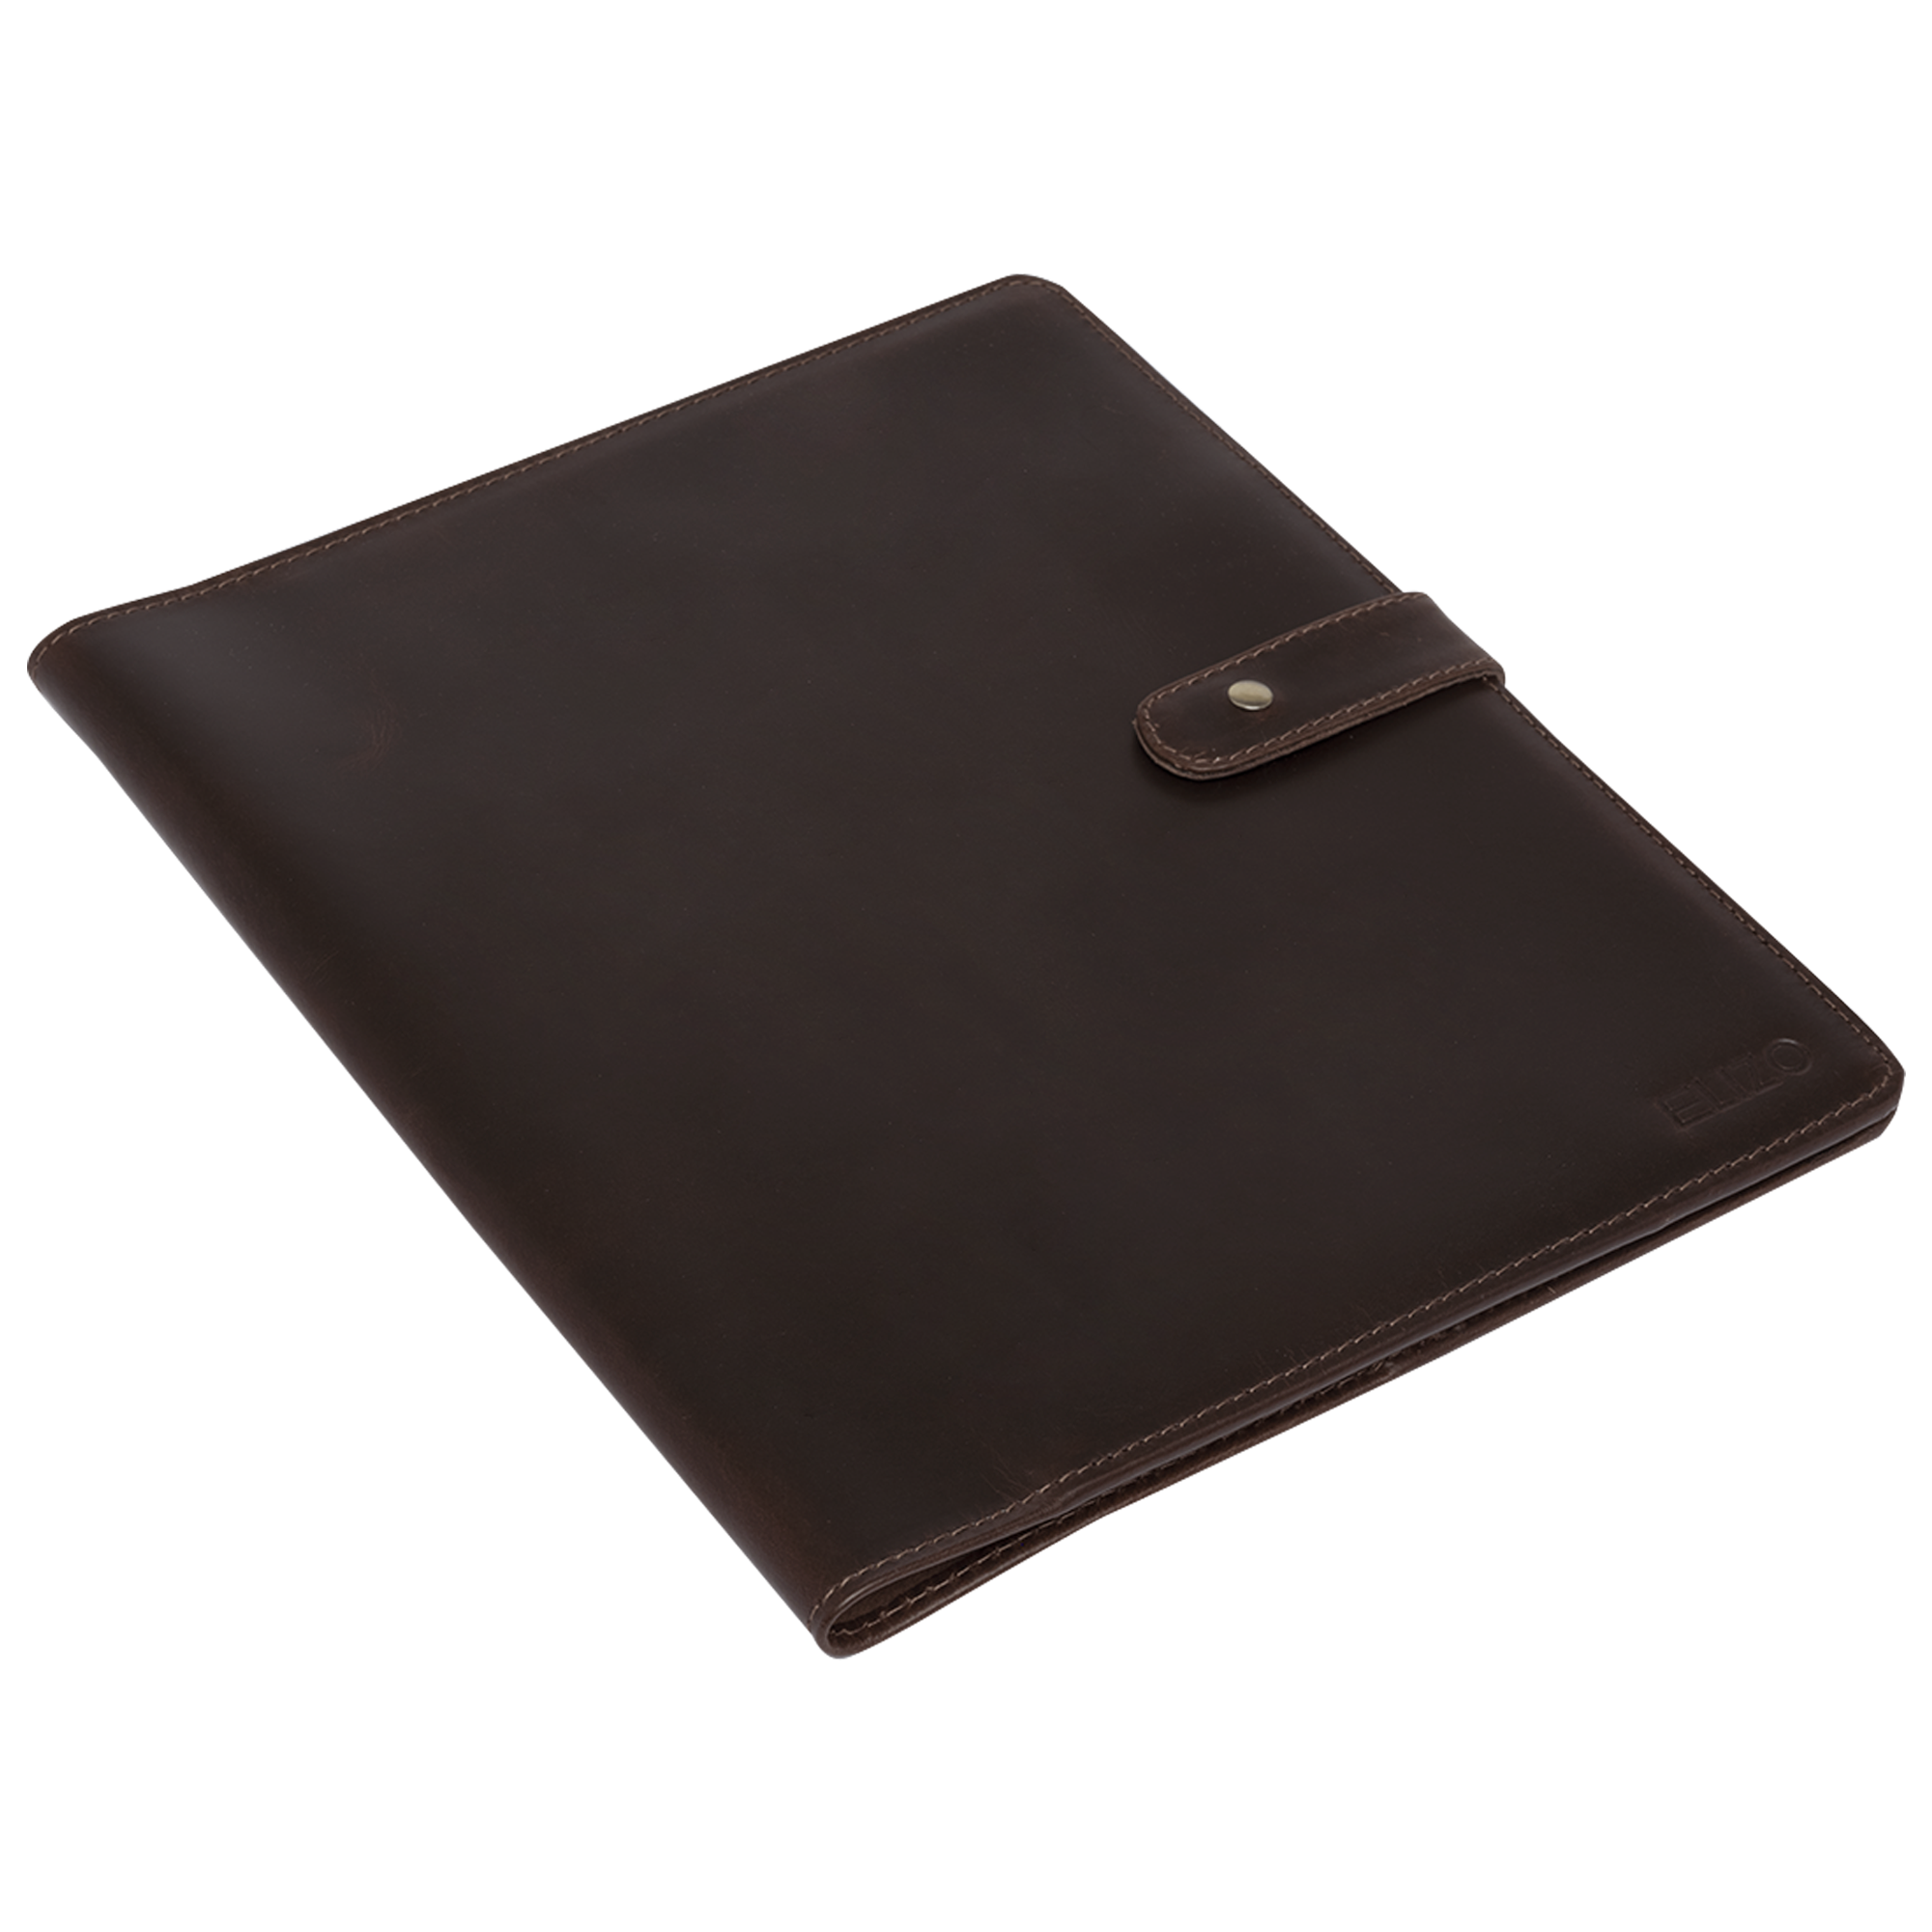 Leather Notebook Cover Rocketbook - Walnut (Rocket Letter)